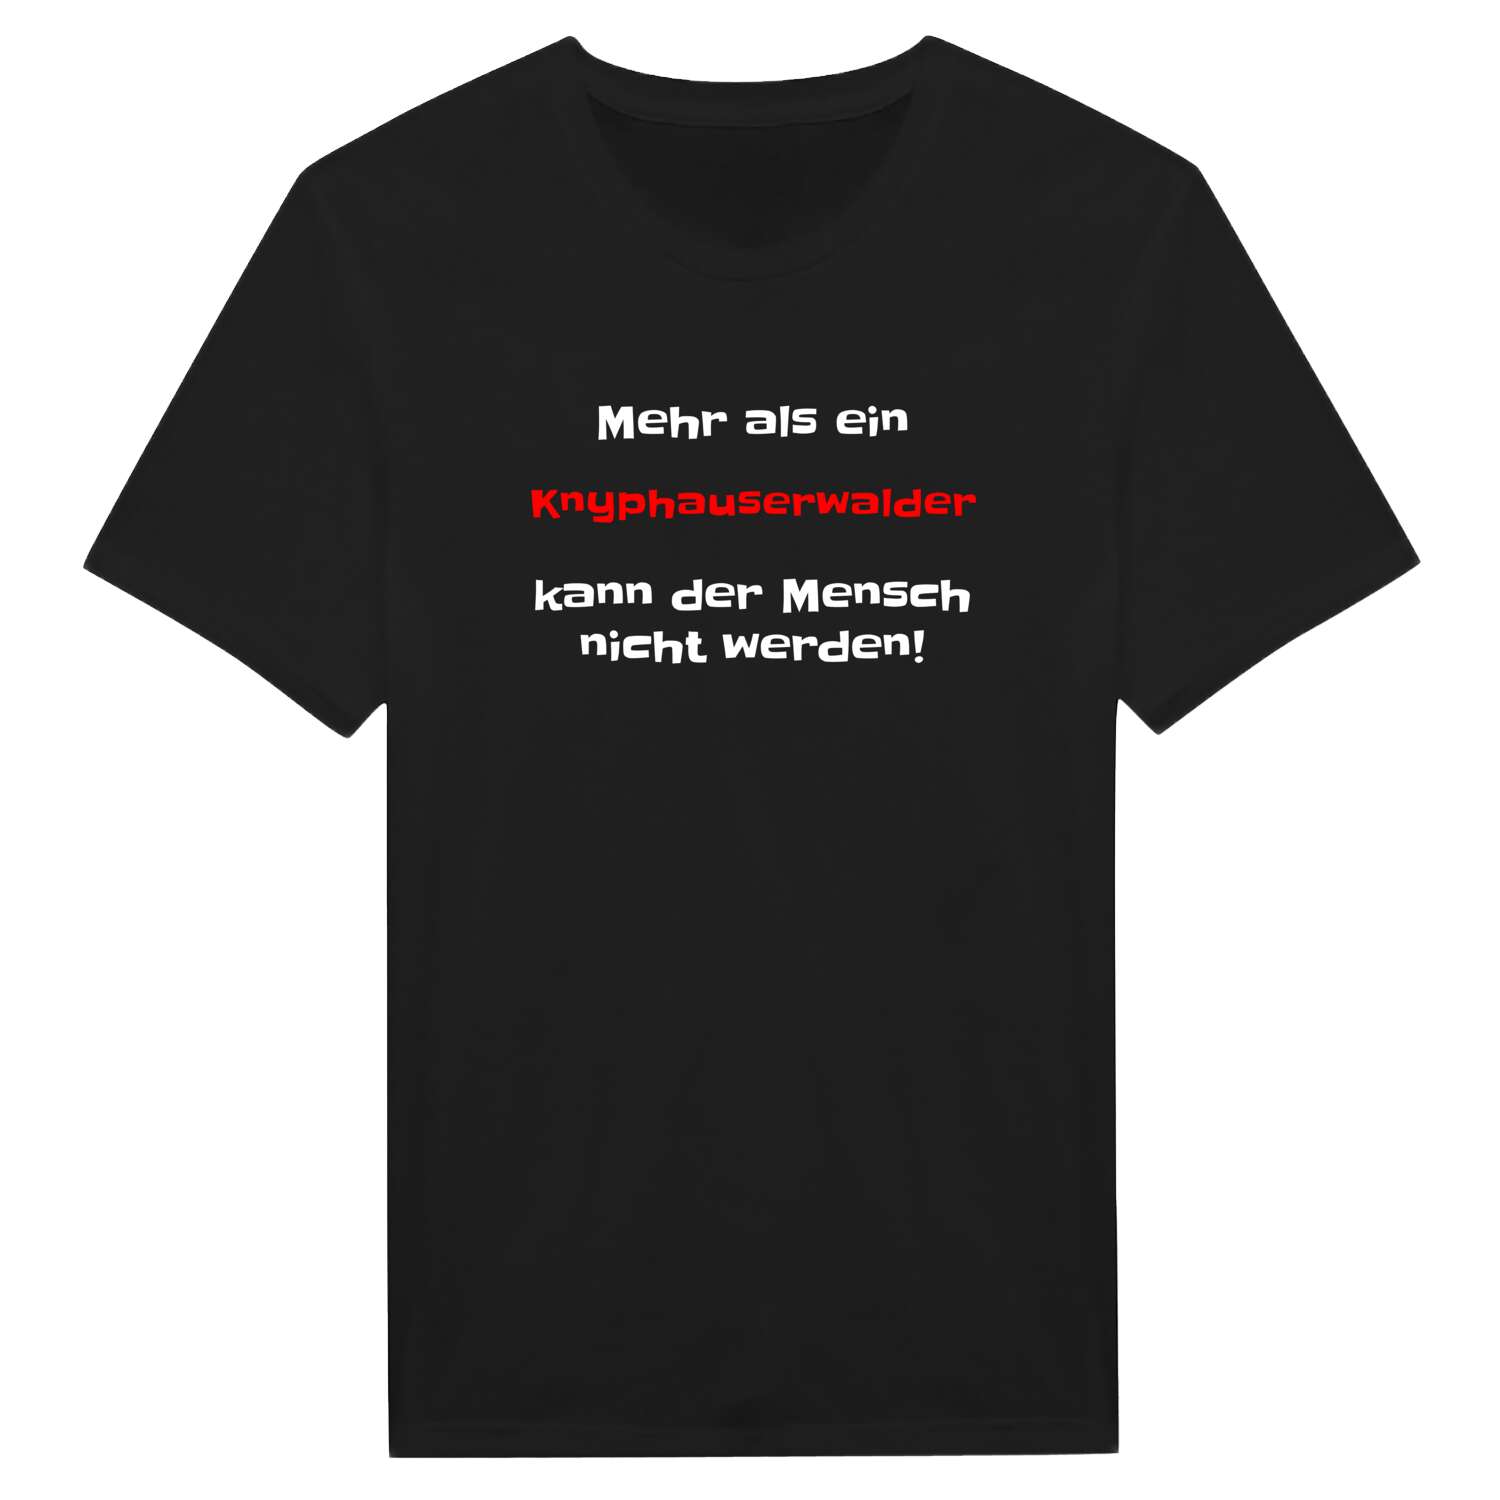 Knyphauserwald T-Shirt »Mehr als ein«